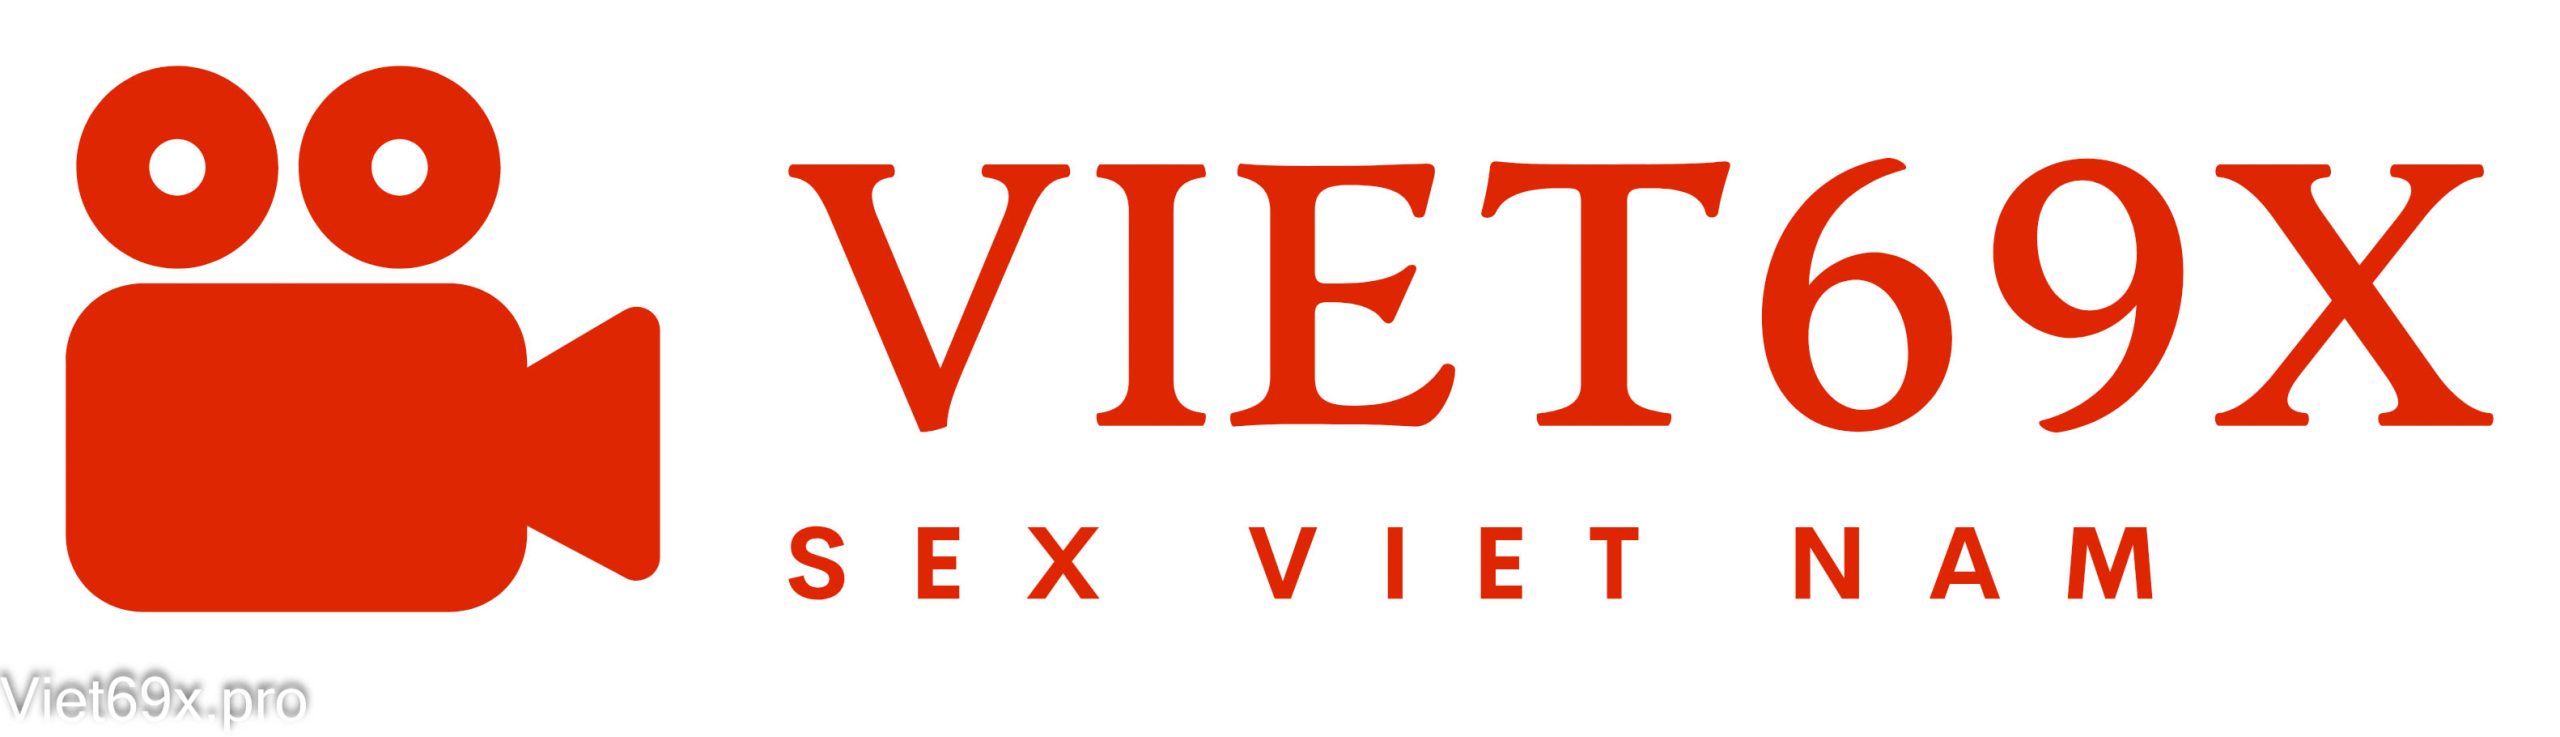 Viet69X